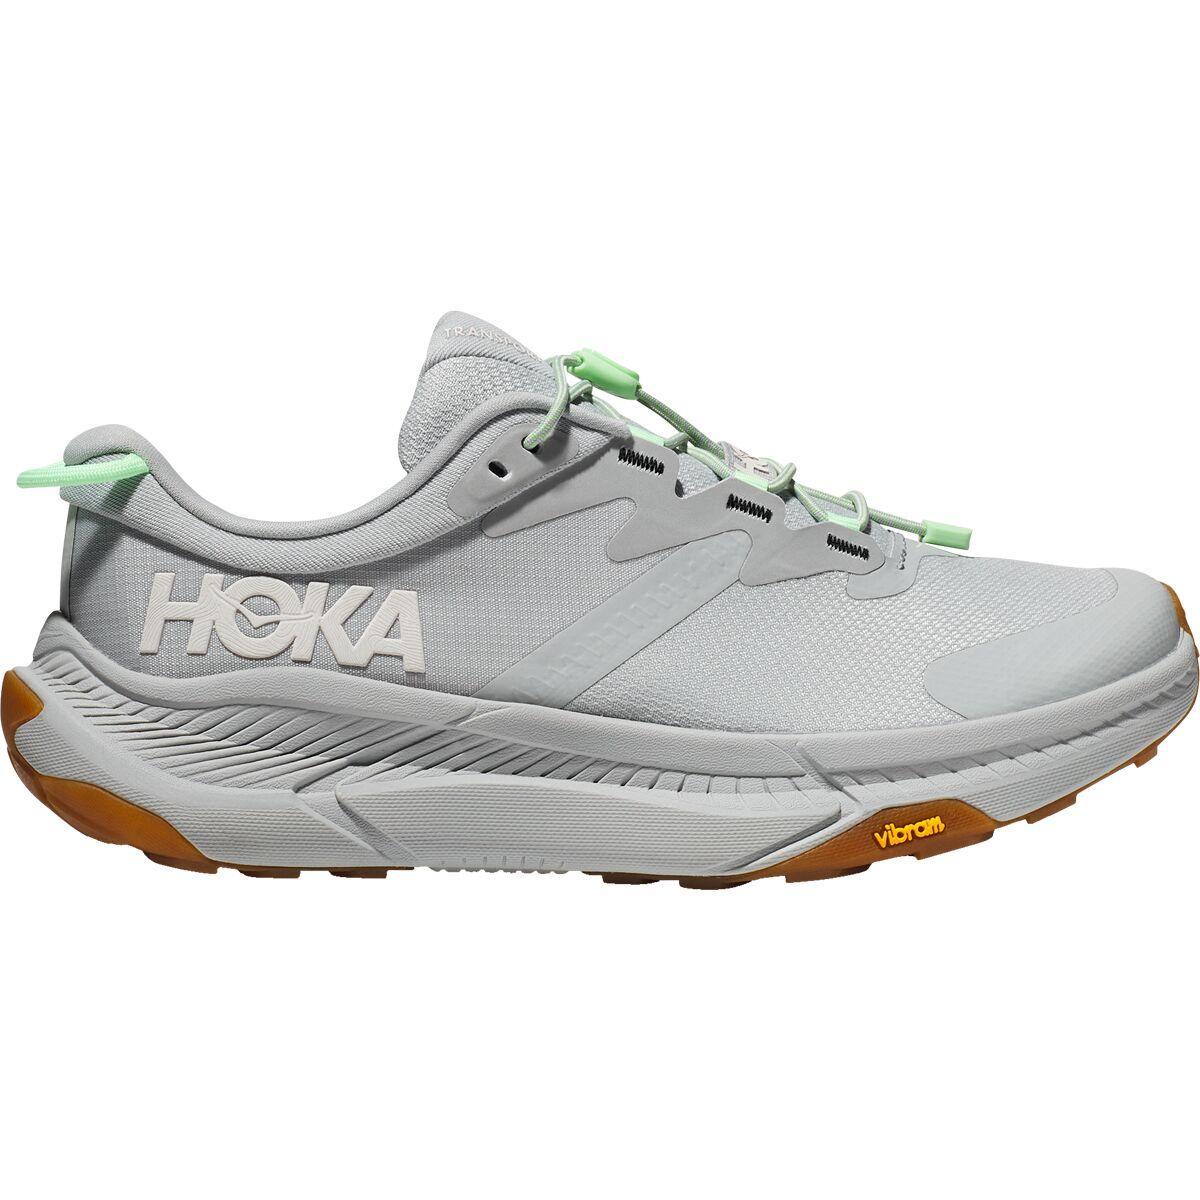 HOKA Transport Running Shoe Product Image